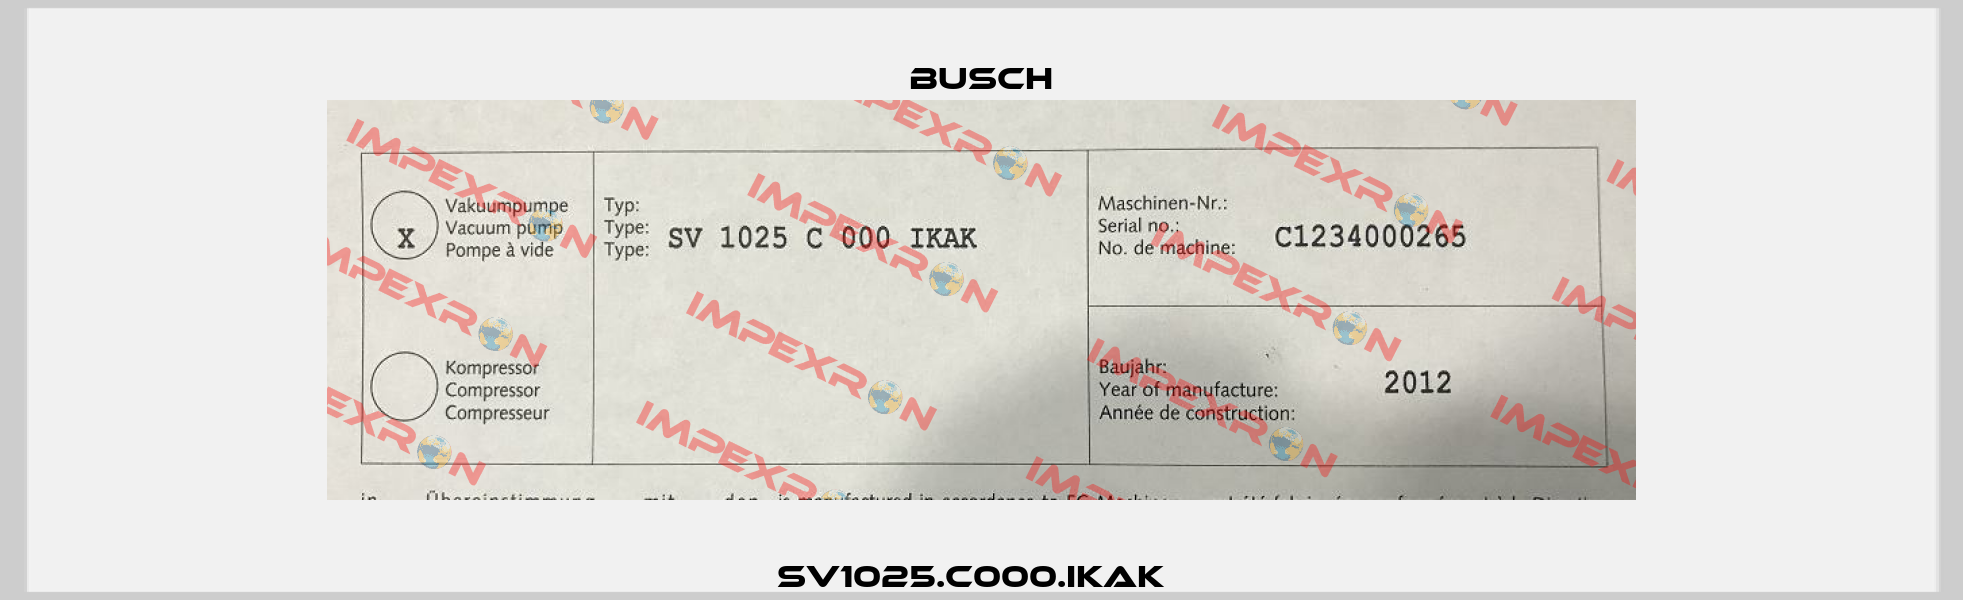 SV1025.C000.IKAK   Busch